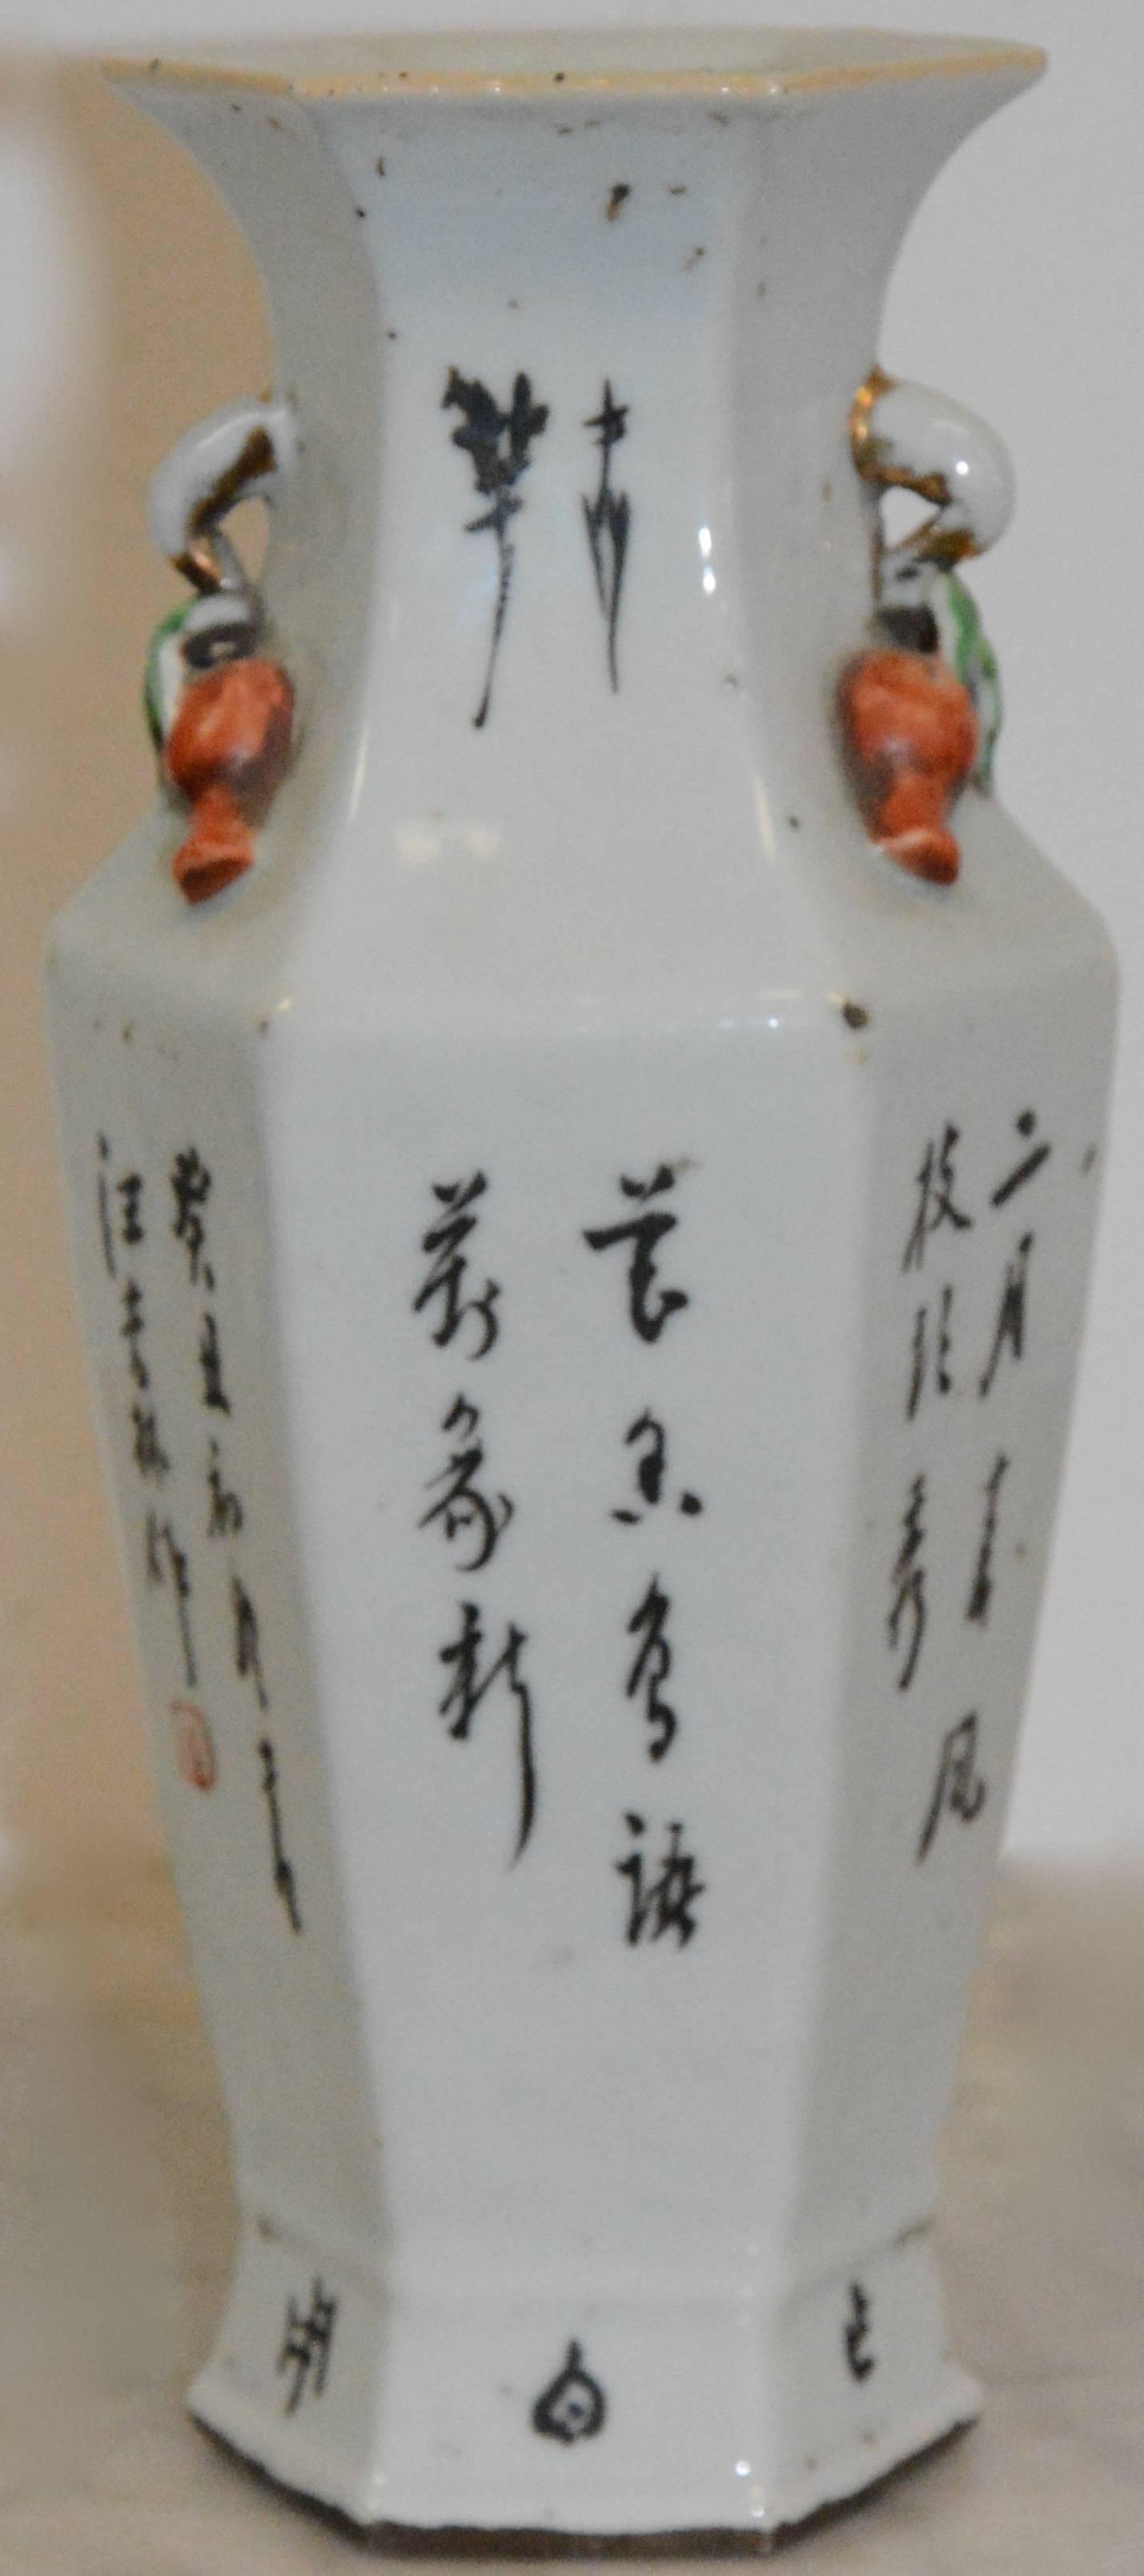 Glazed Japanese Ceramic Hand Painted Vase